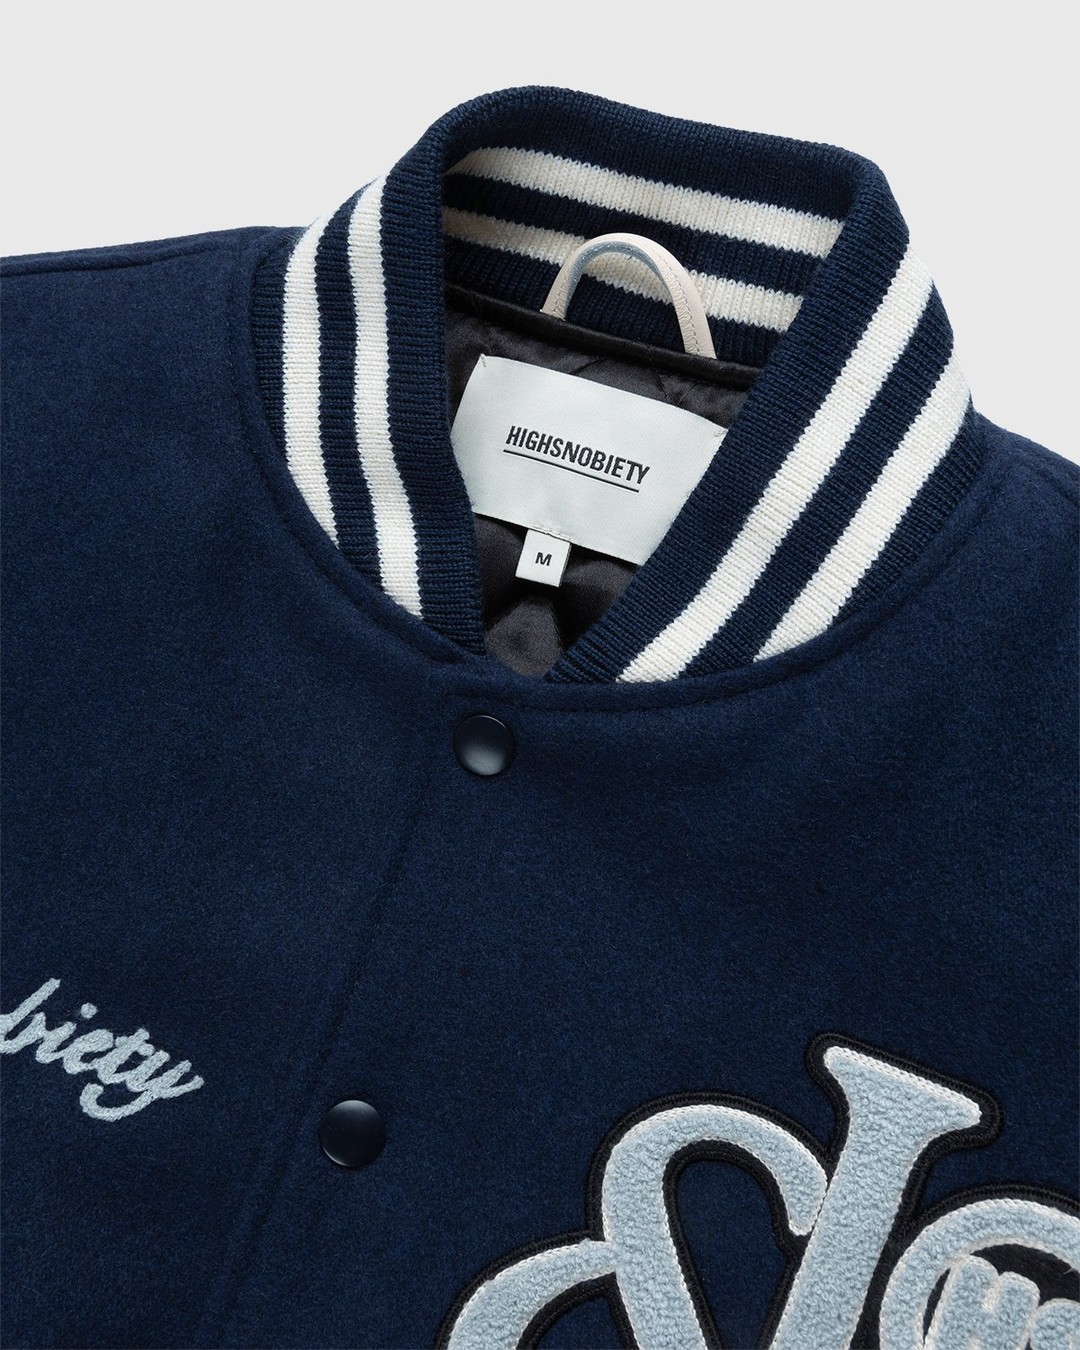 Jacob & Co. x Highsnobiety – Logo Varsity Jacket Navy Creme - Bomber Jackets - Blue - Image 3